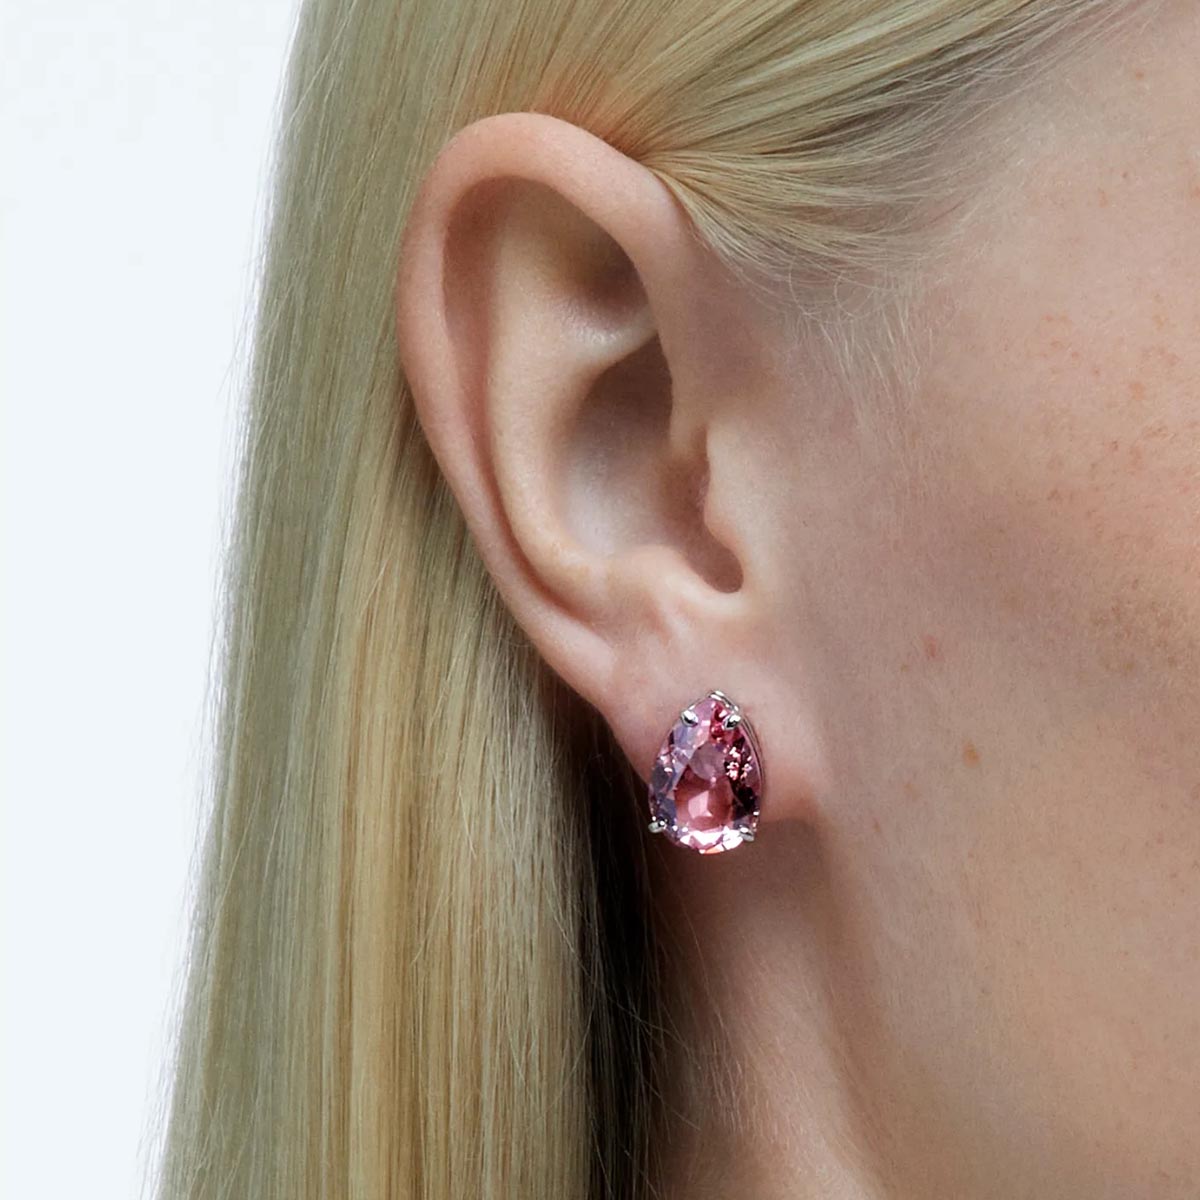 Details more than 220 garnet earrings swarovski latest